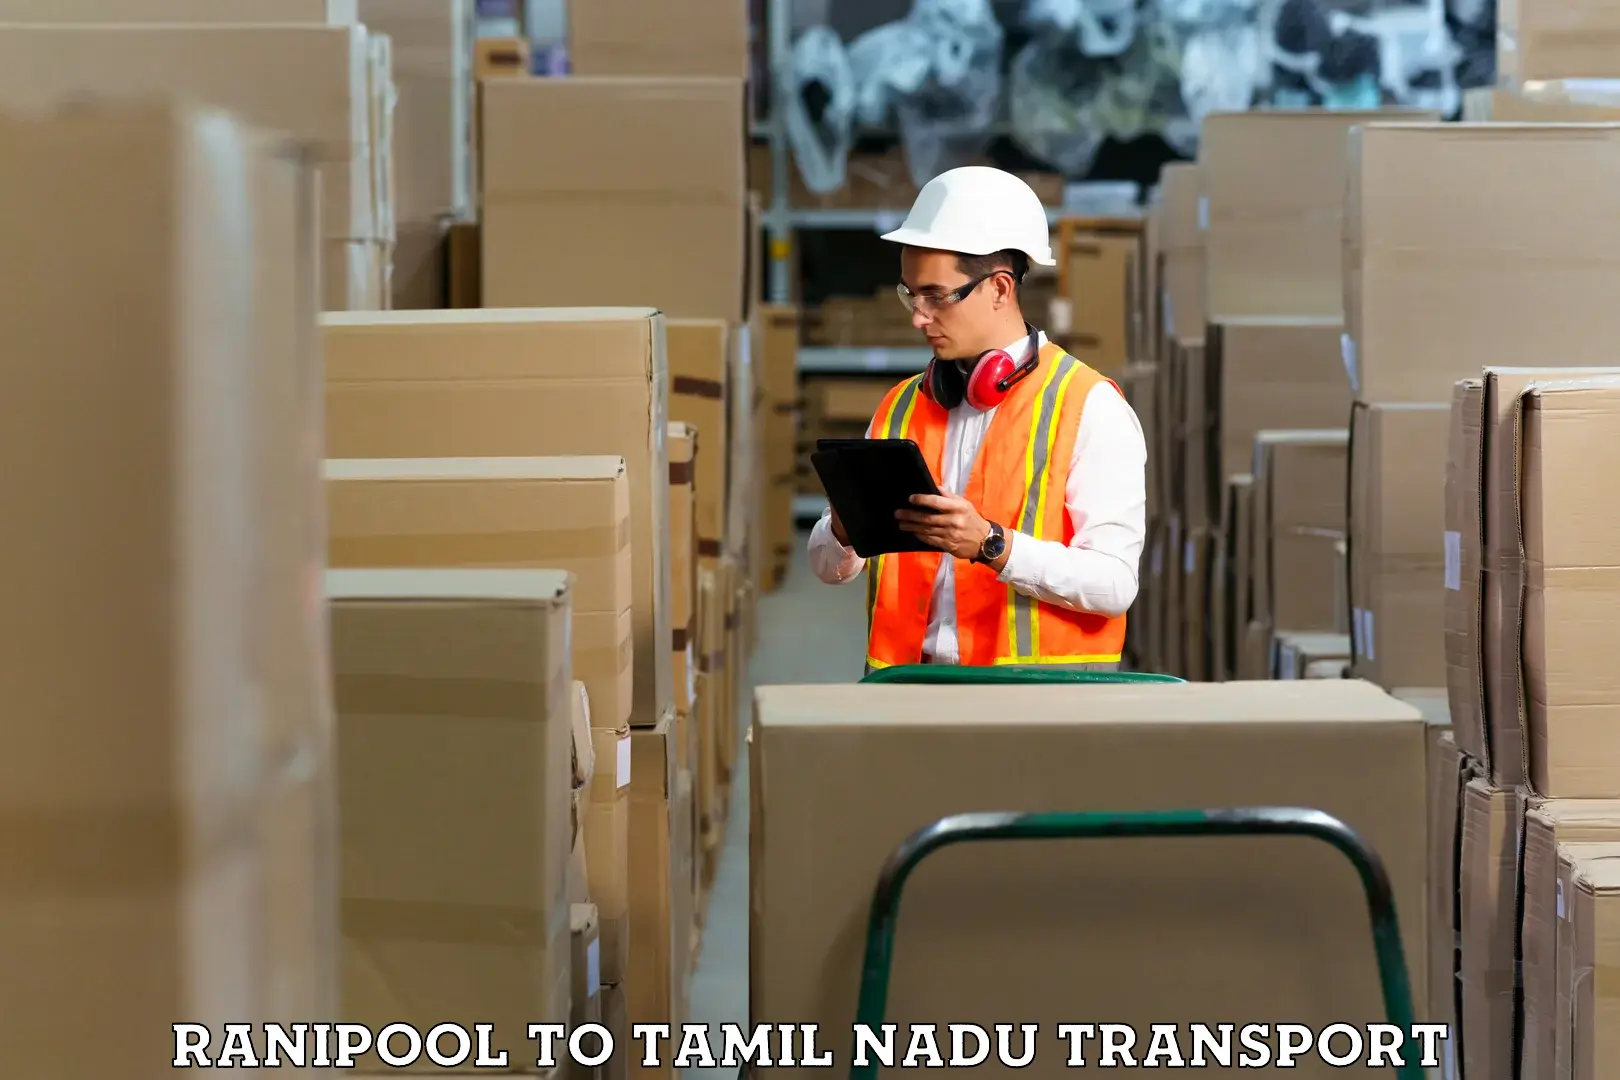 Online transport service Ranipool to Tamil Nadu